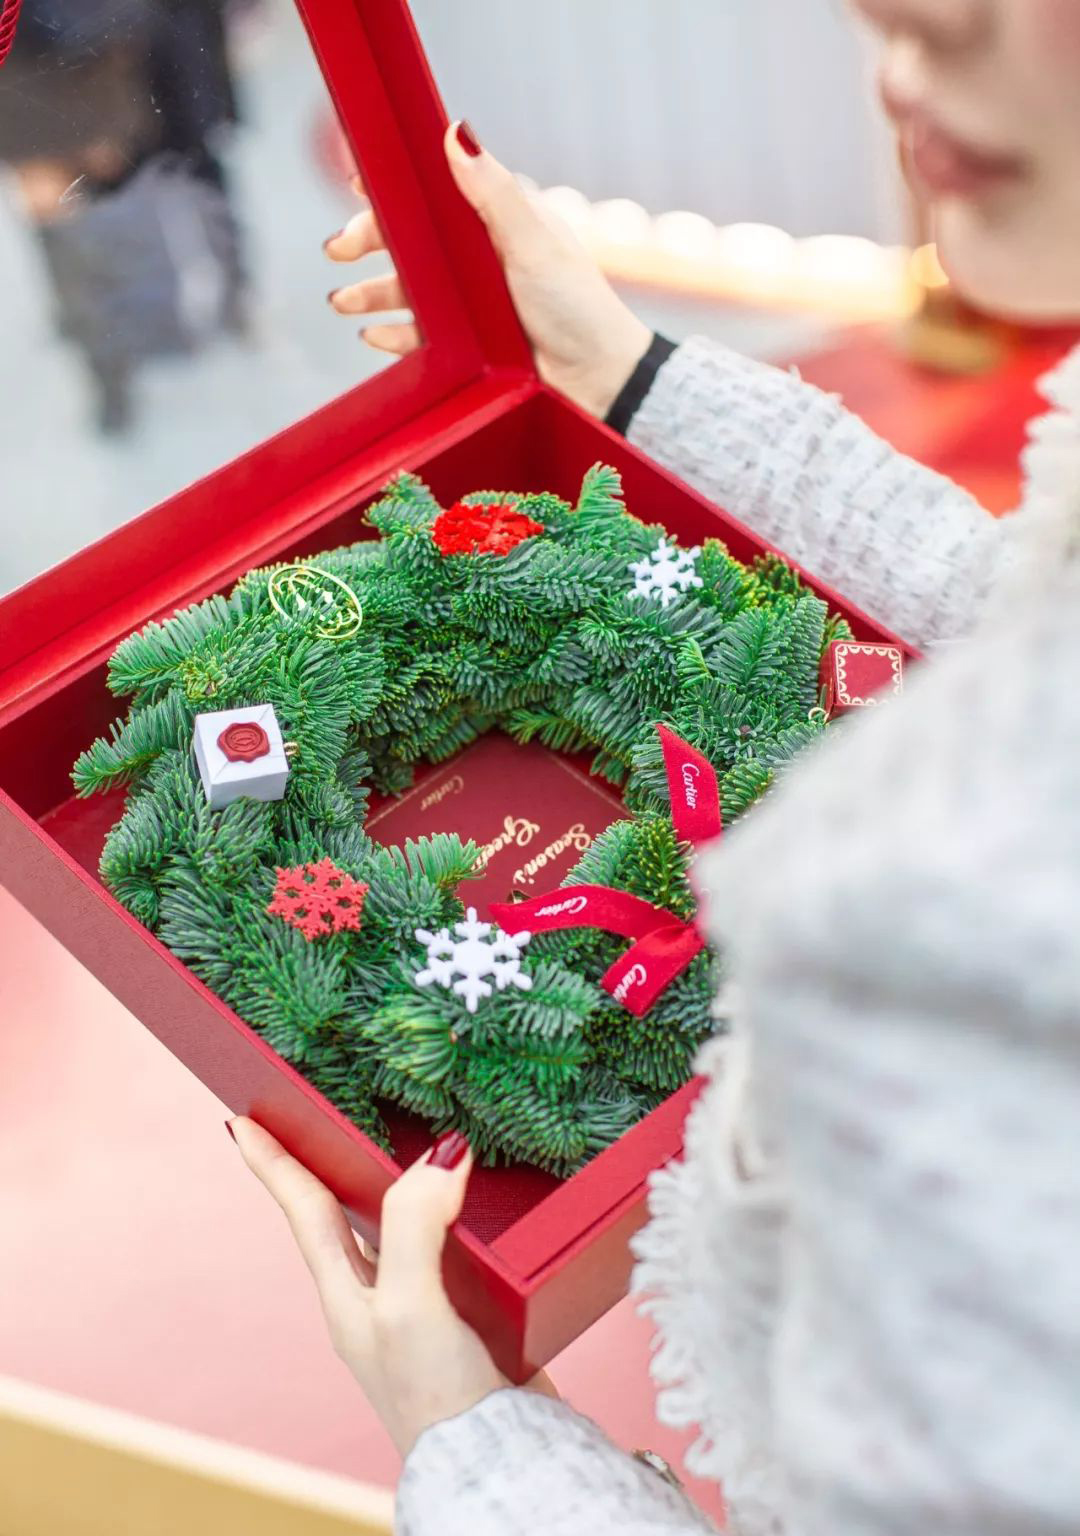 最美圣诞树美陈设计当属卡地亚了，红盒之中的光芒温暖了冬日时光 美陈网站 美陈前沿 